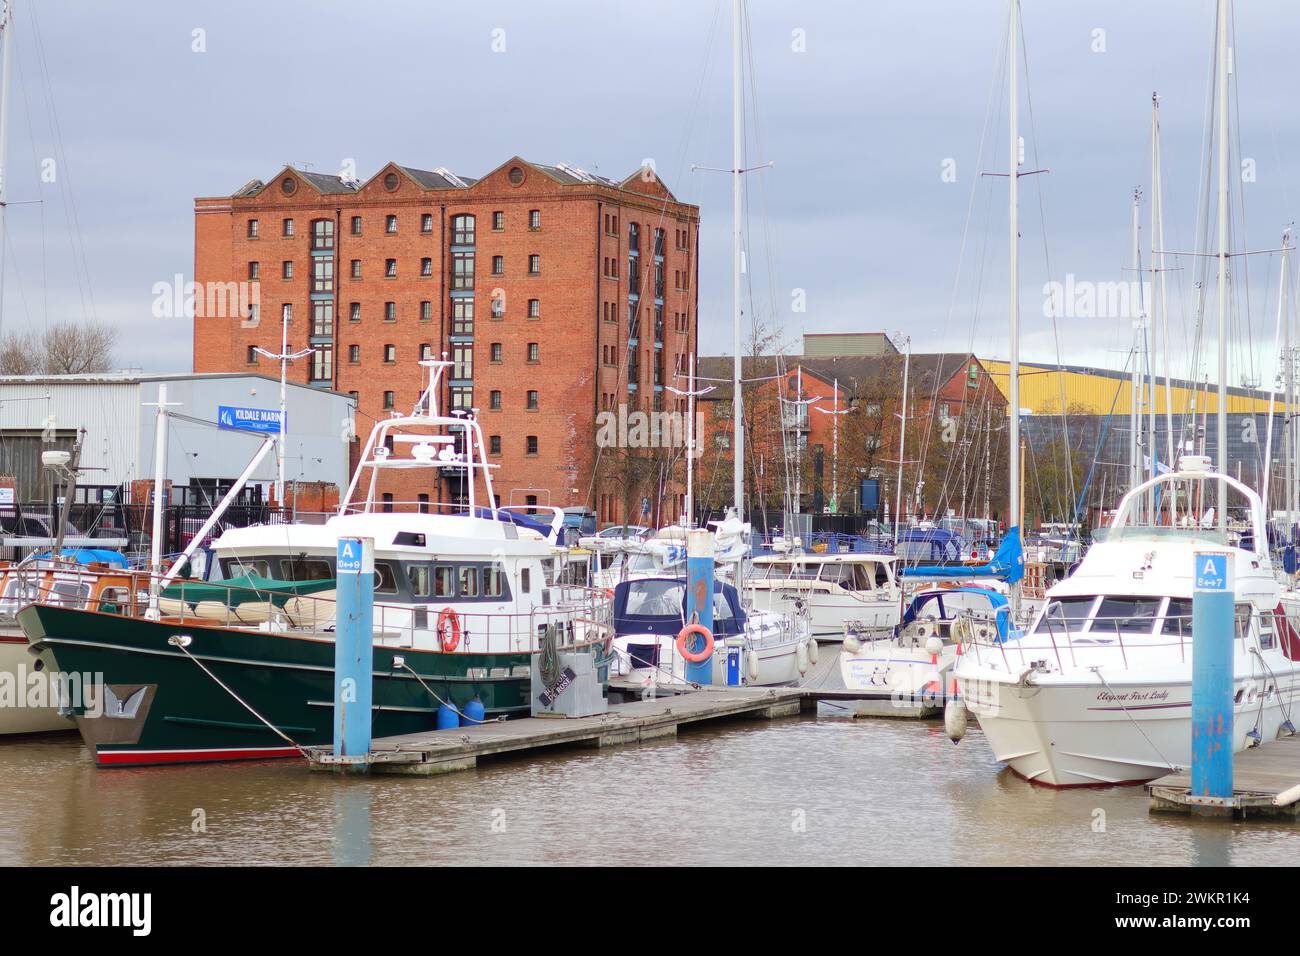 The new Marina area at Hull, Yorkshire, UK Stock Photo